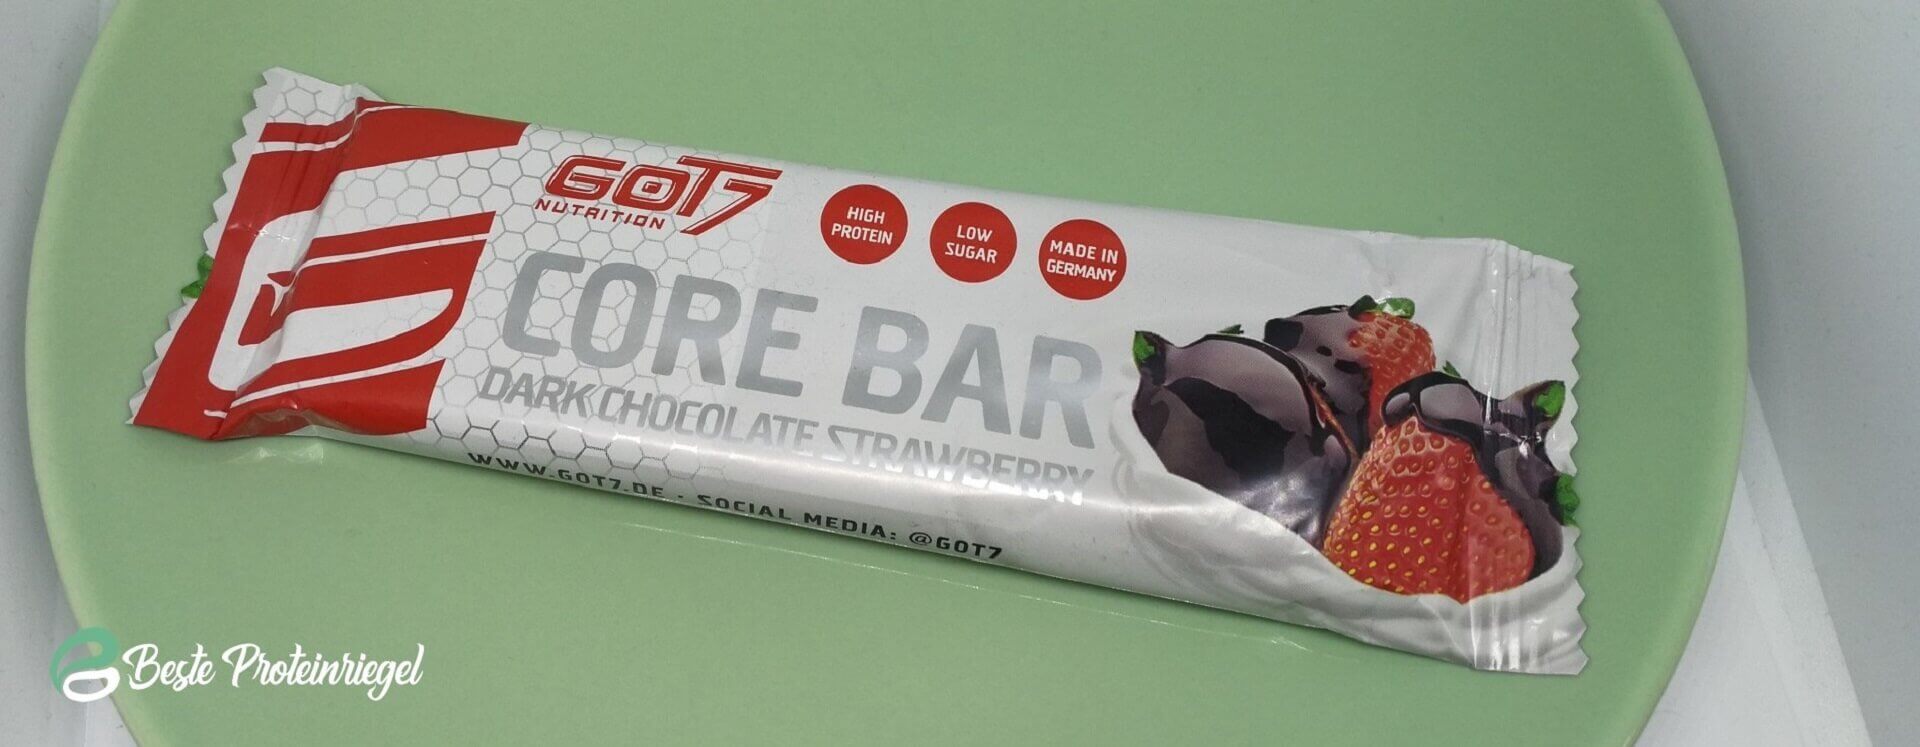 GOT7 Nutrition Core Bar Testbericht